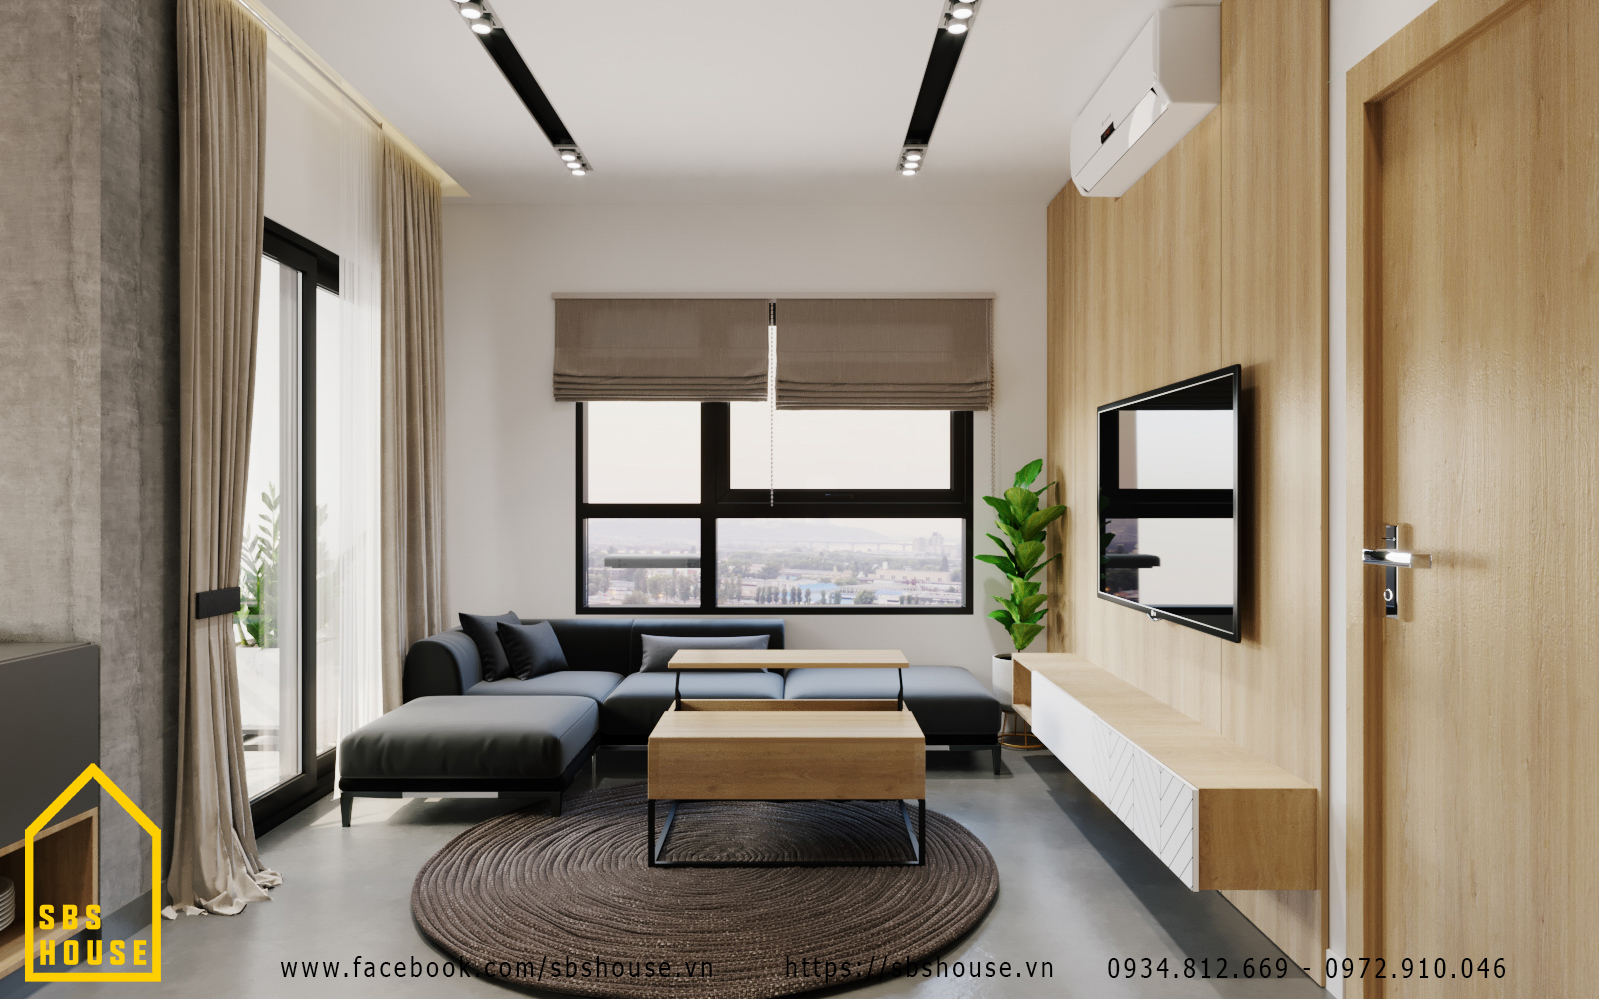 10 mẫu thiết kế nội thất chung cư đẹp hiện đại